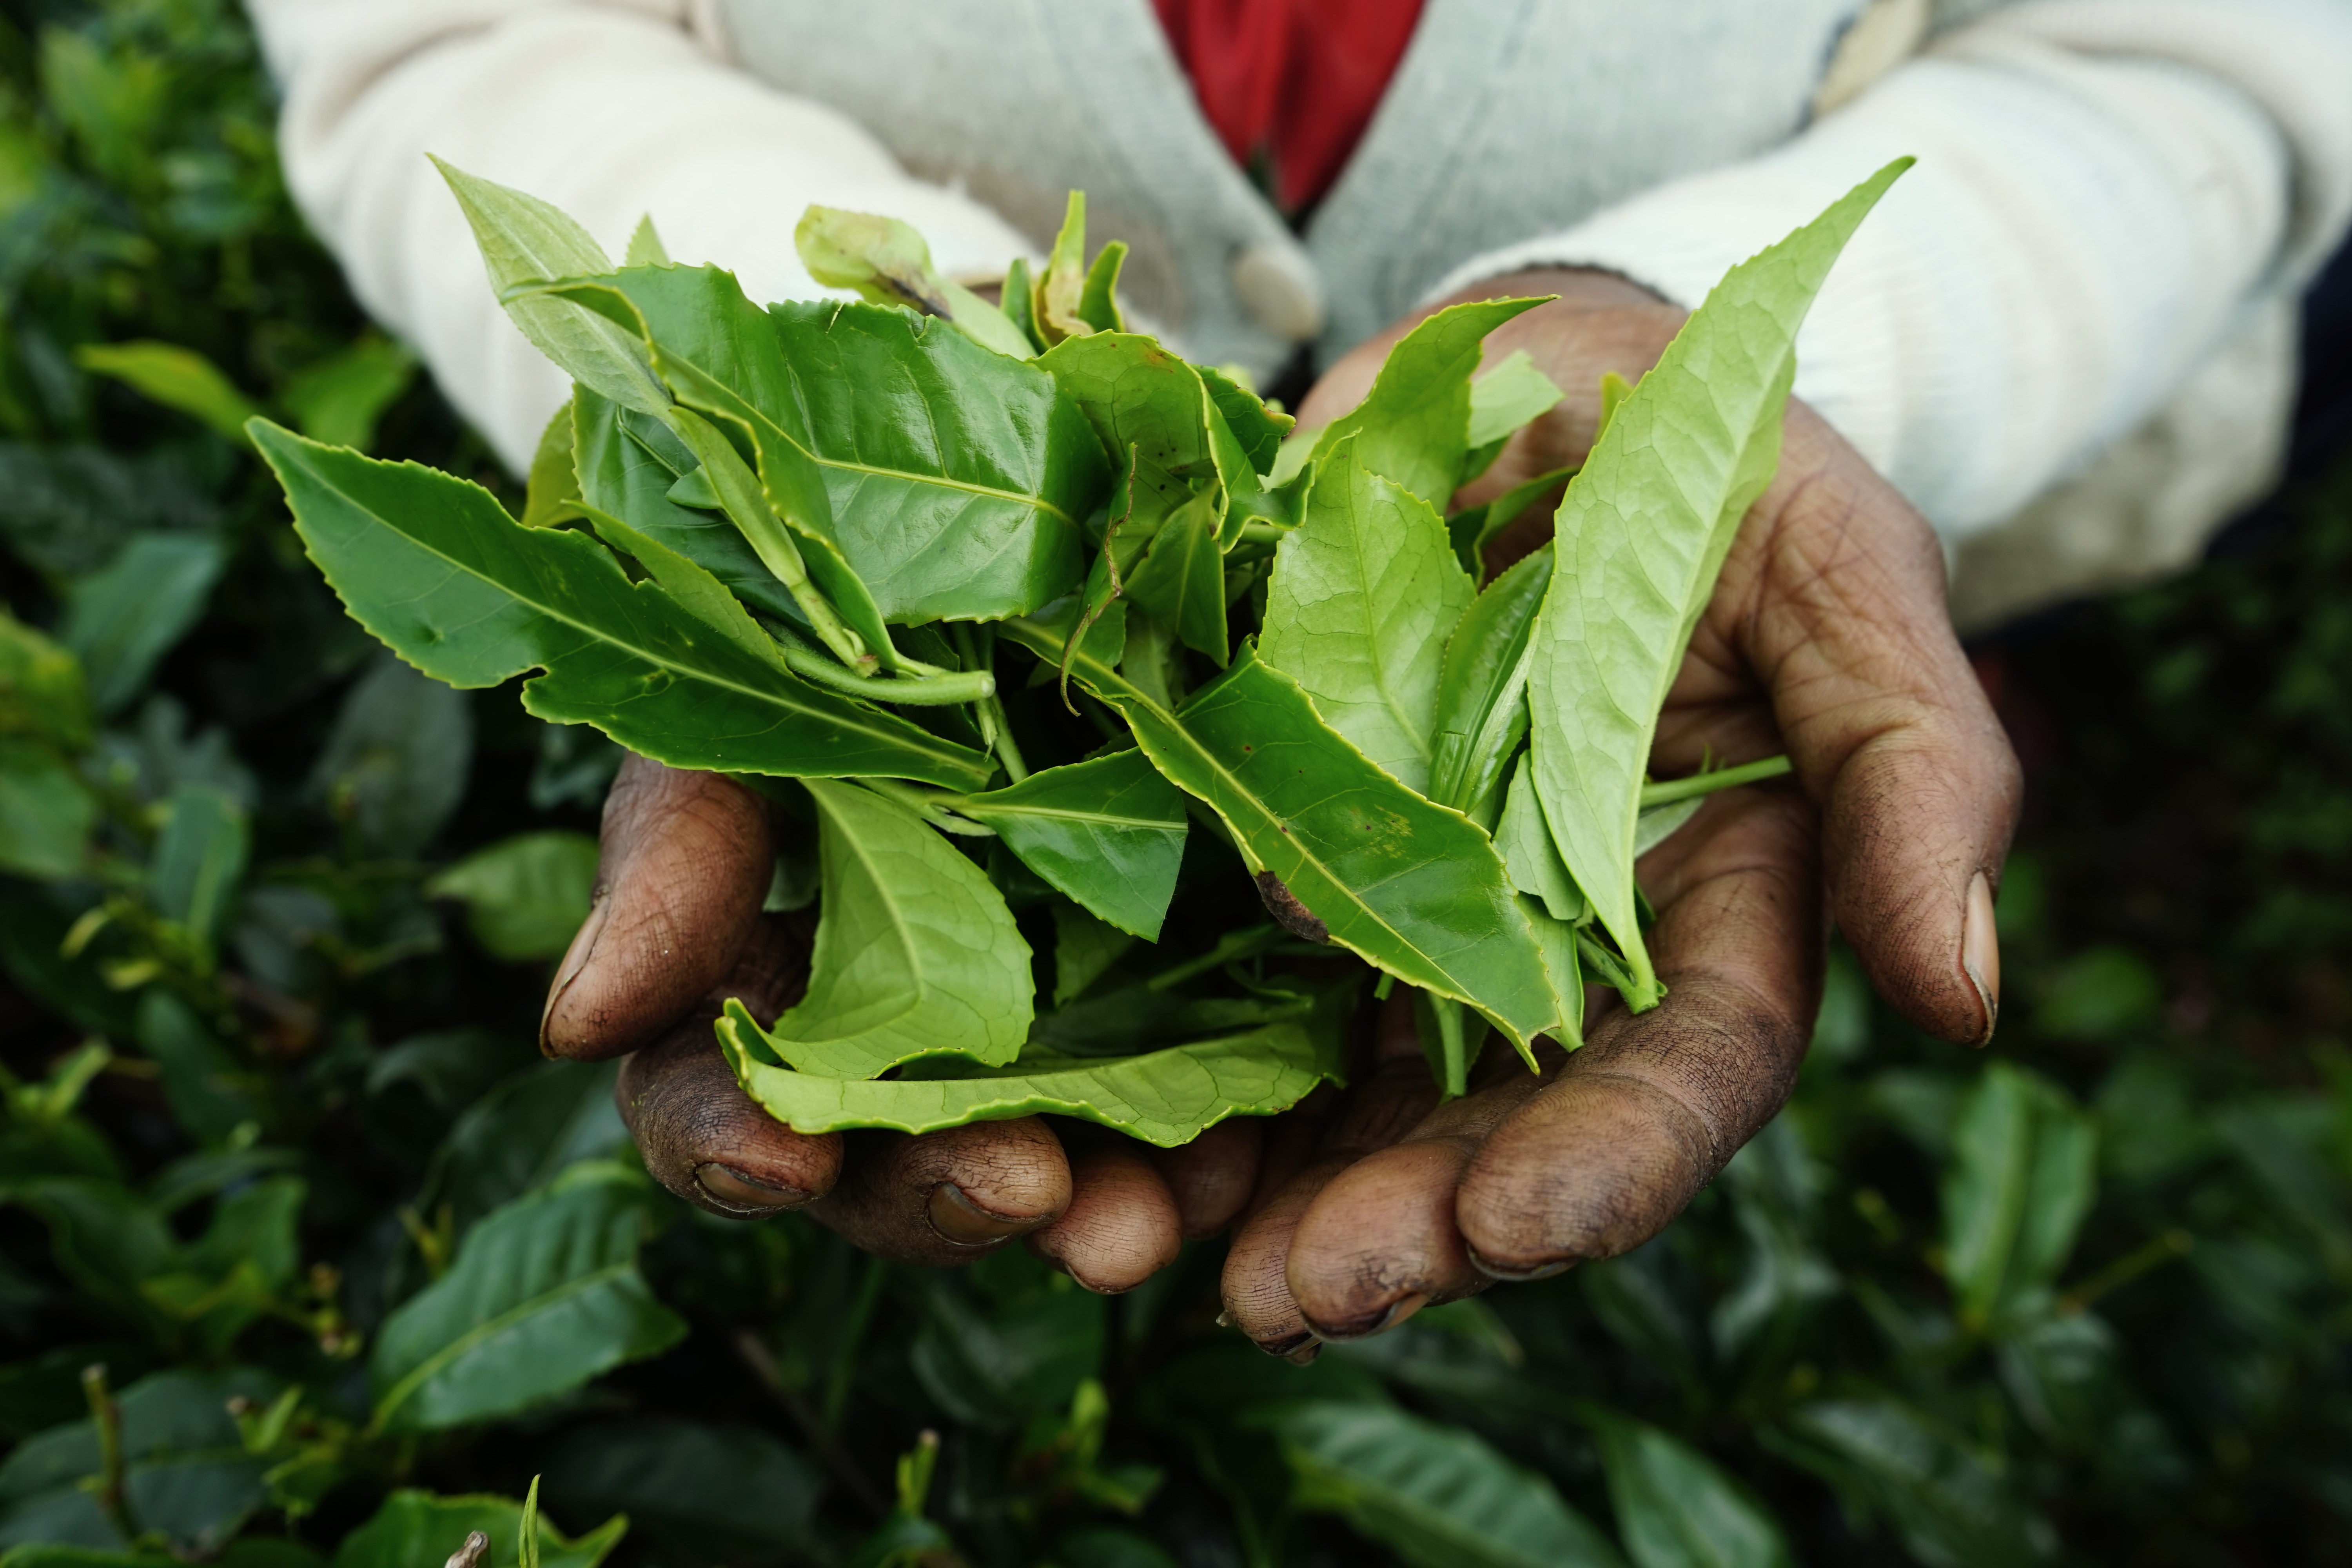 Bienfaits et différences entre le thé noir, vert, matcha, Rooibos